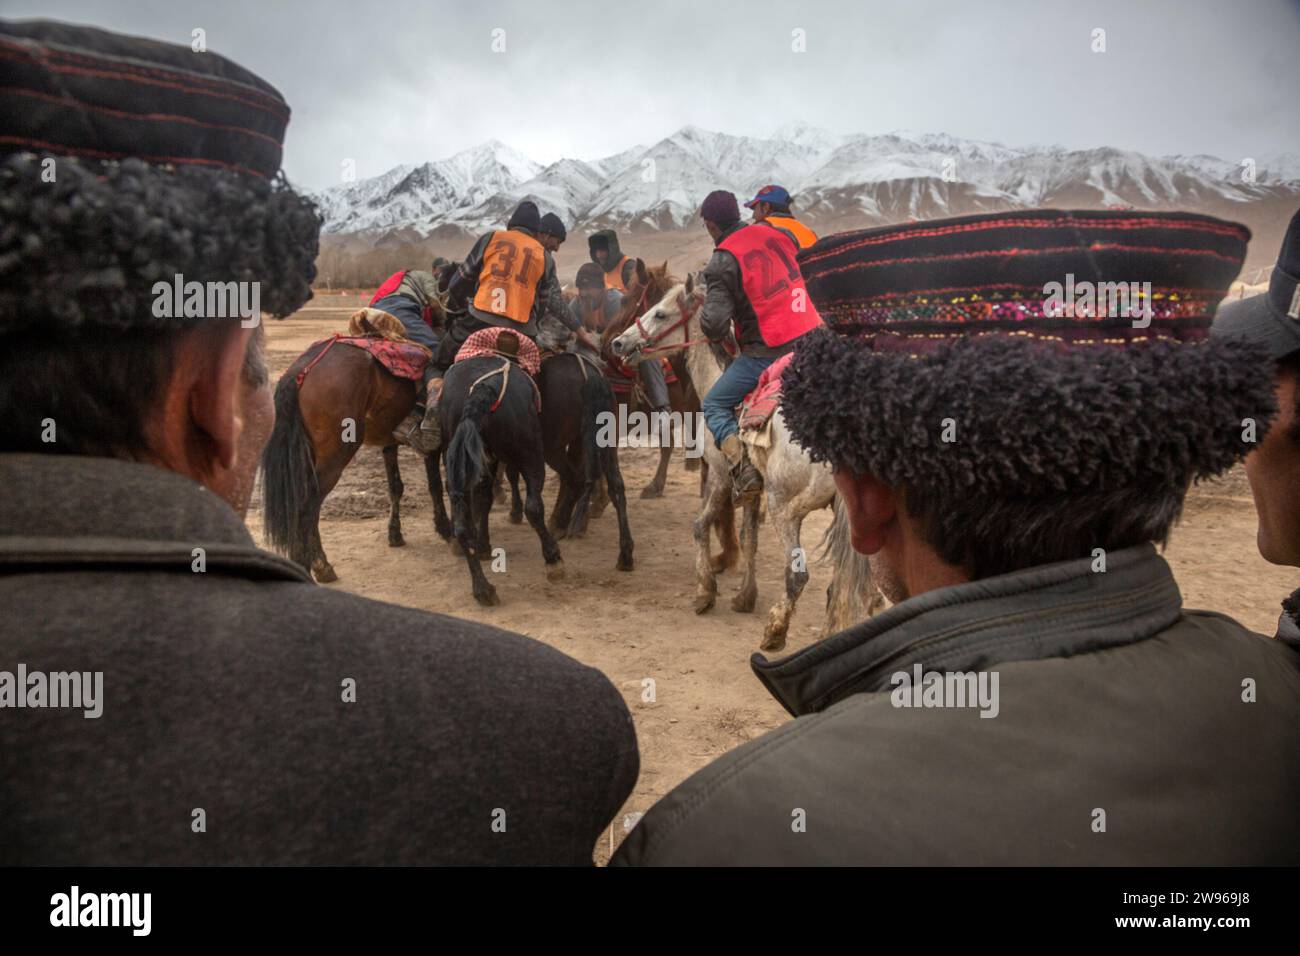 Tashkurgan, Cina. 20 marzo 2016. I cavalieri del gruppo etnico tagiko partecipano alla competizione Buzkashi nella contea autonoma di Taxkorgan, nella regione autonoma di Xinjiang Uygur della Cina nordoccidentale Foto Stock